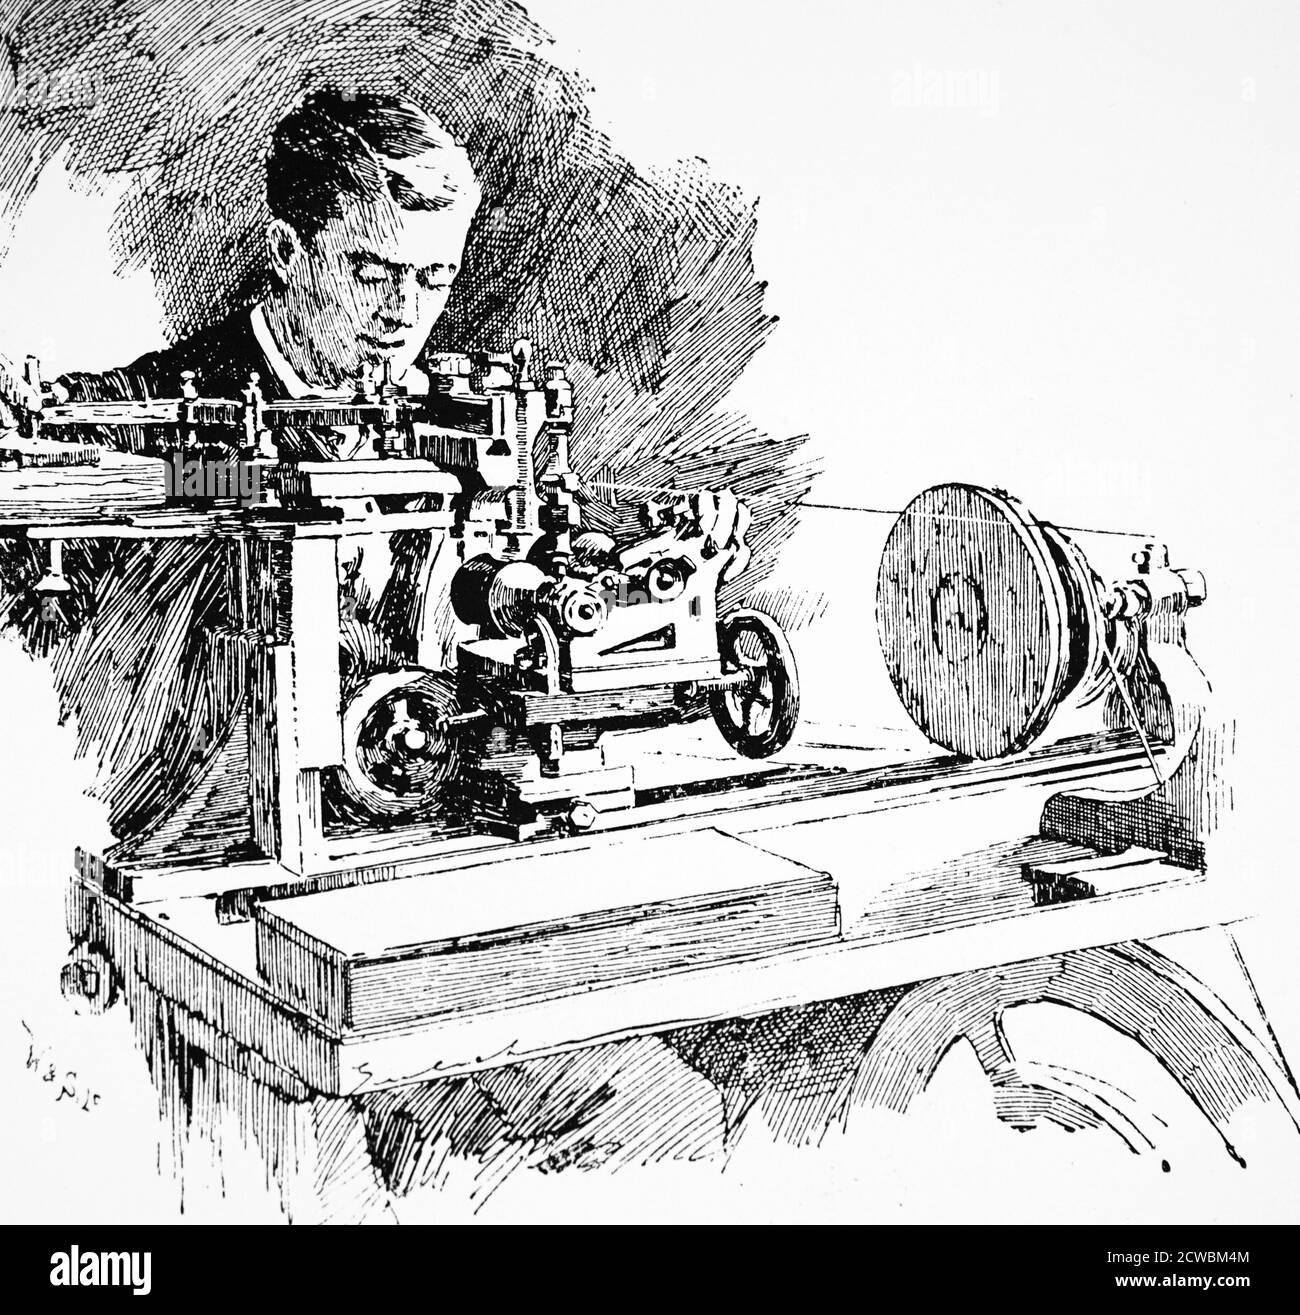 travailleur industriel utilisant des outils de précision dans une usine d'ingénierie. vers 1925 Banque D'Images